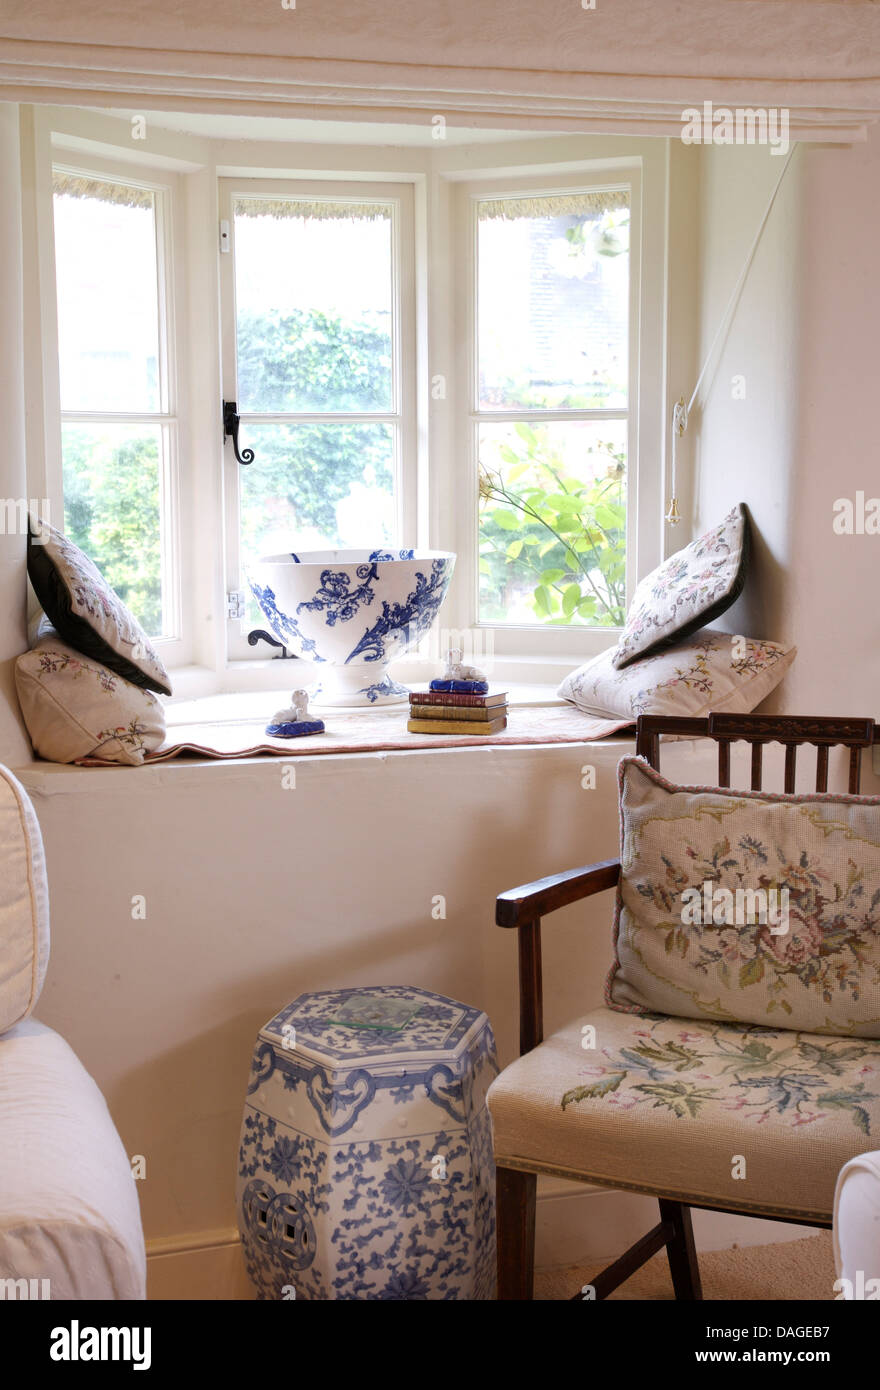 Hand gearbeitet Gobelin Kissen und Sitz auf hölzernen Stuhl neben  chinesischen blaue + weiße Porzellan Hocker unter Ferienhaus-Fenster  Stockfotografie - Alamy